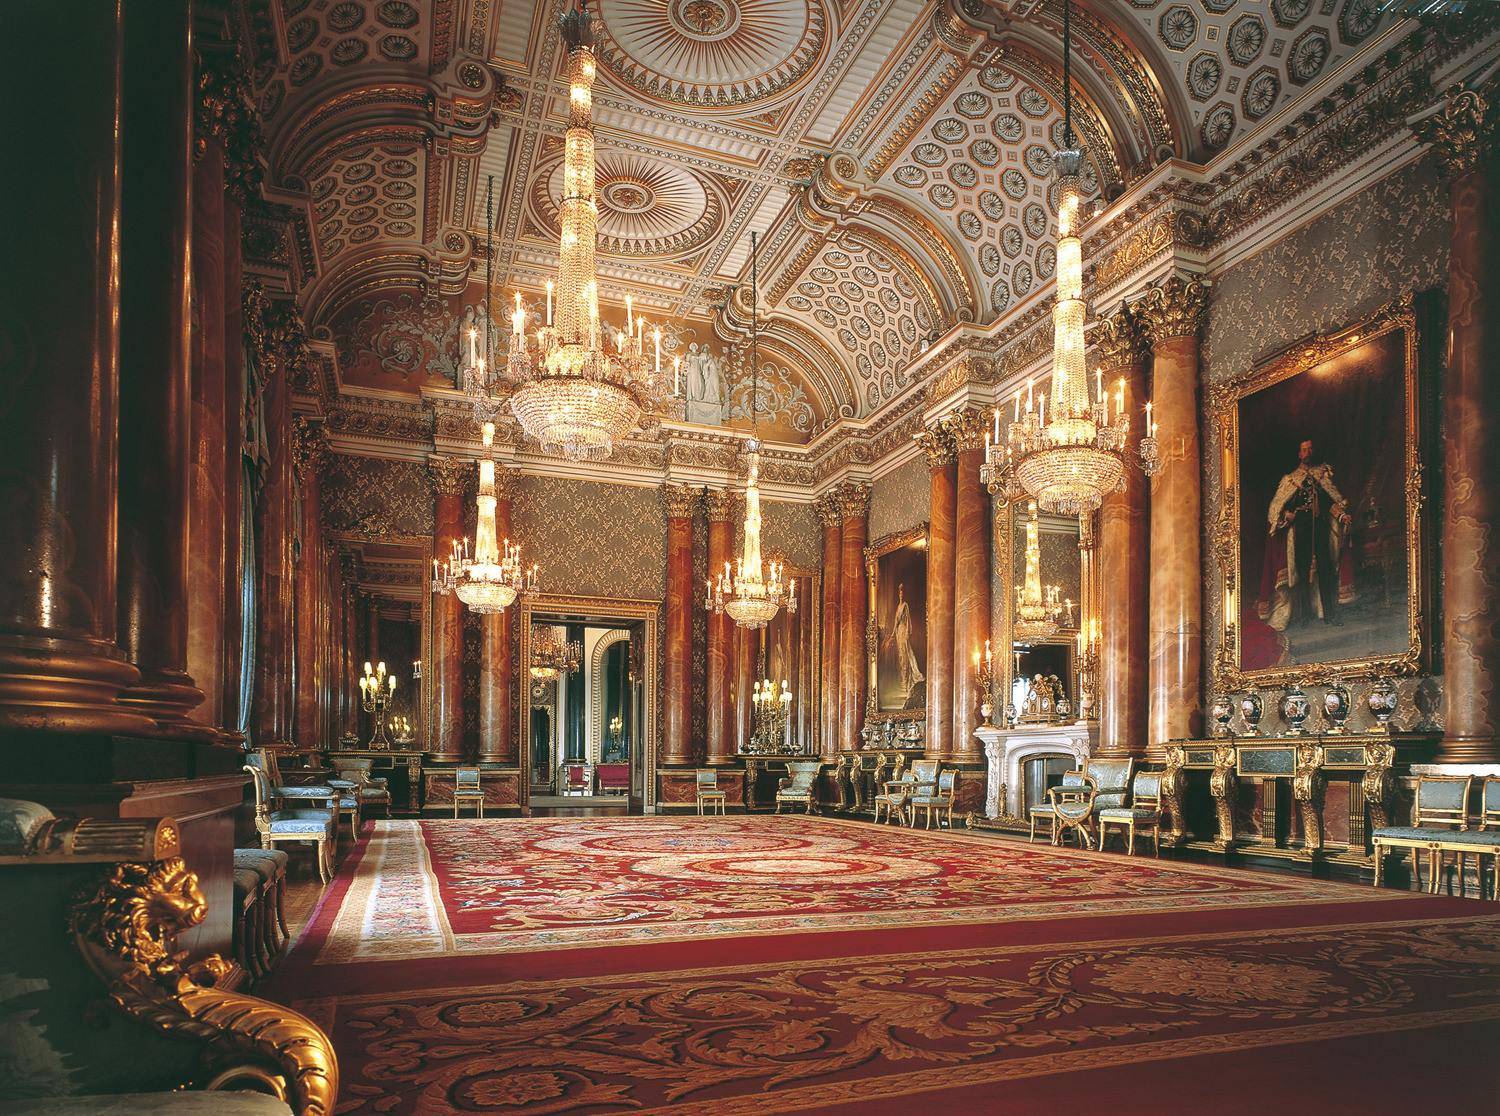 白金汉宫是现任英国女王的主要寝宫和办公场所,它与国会大厦,伦敦塔桥